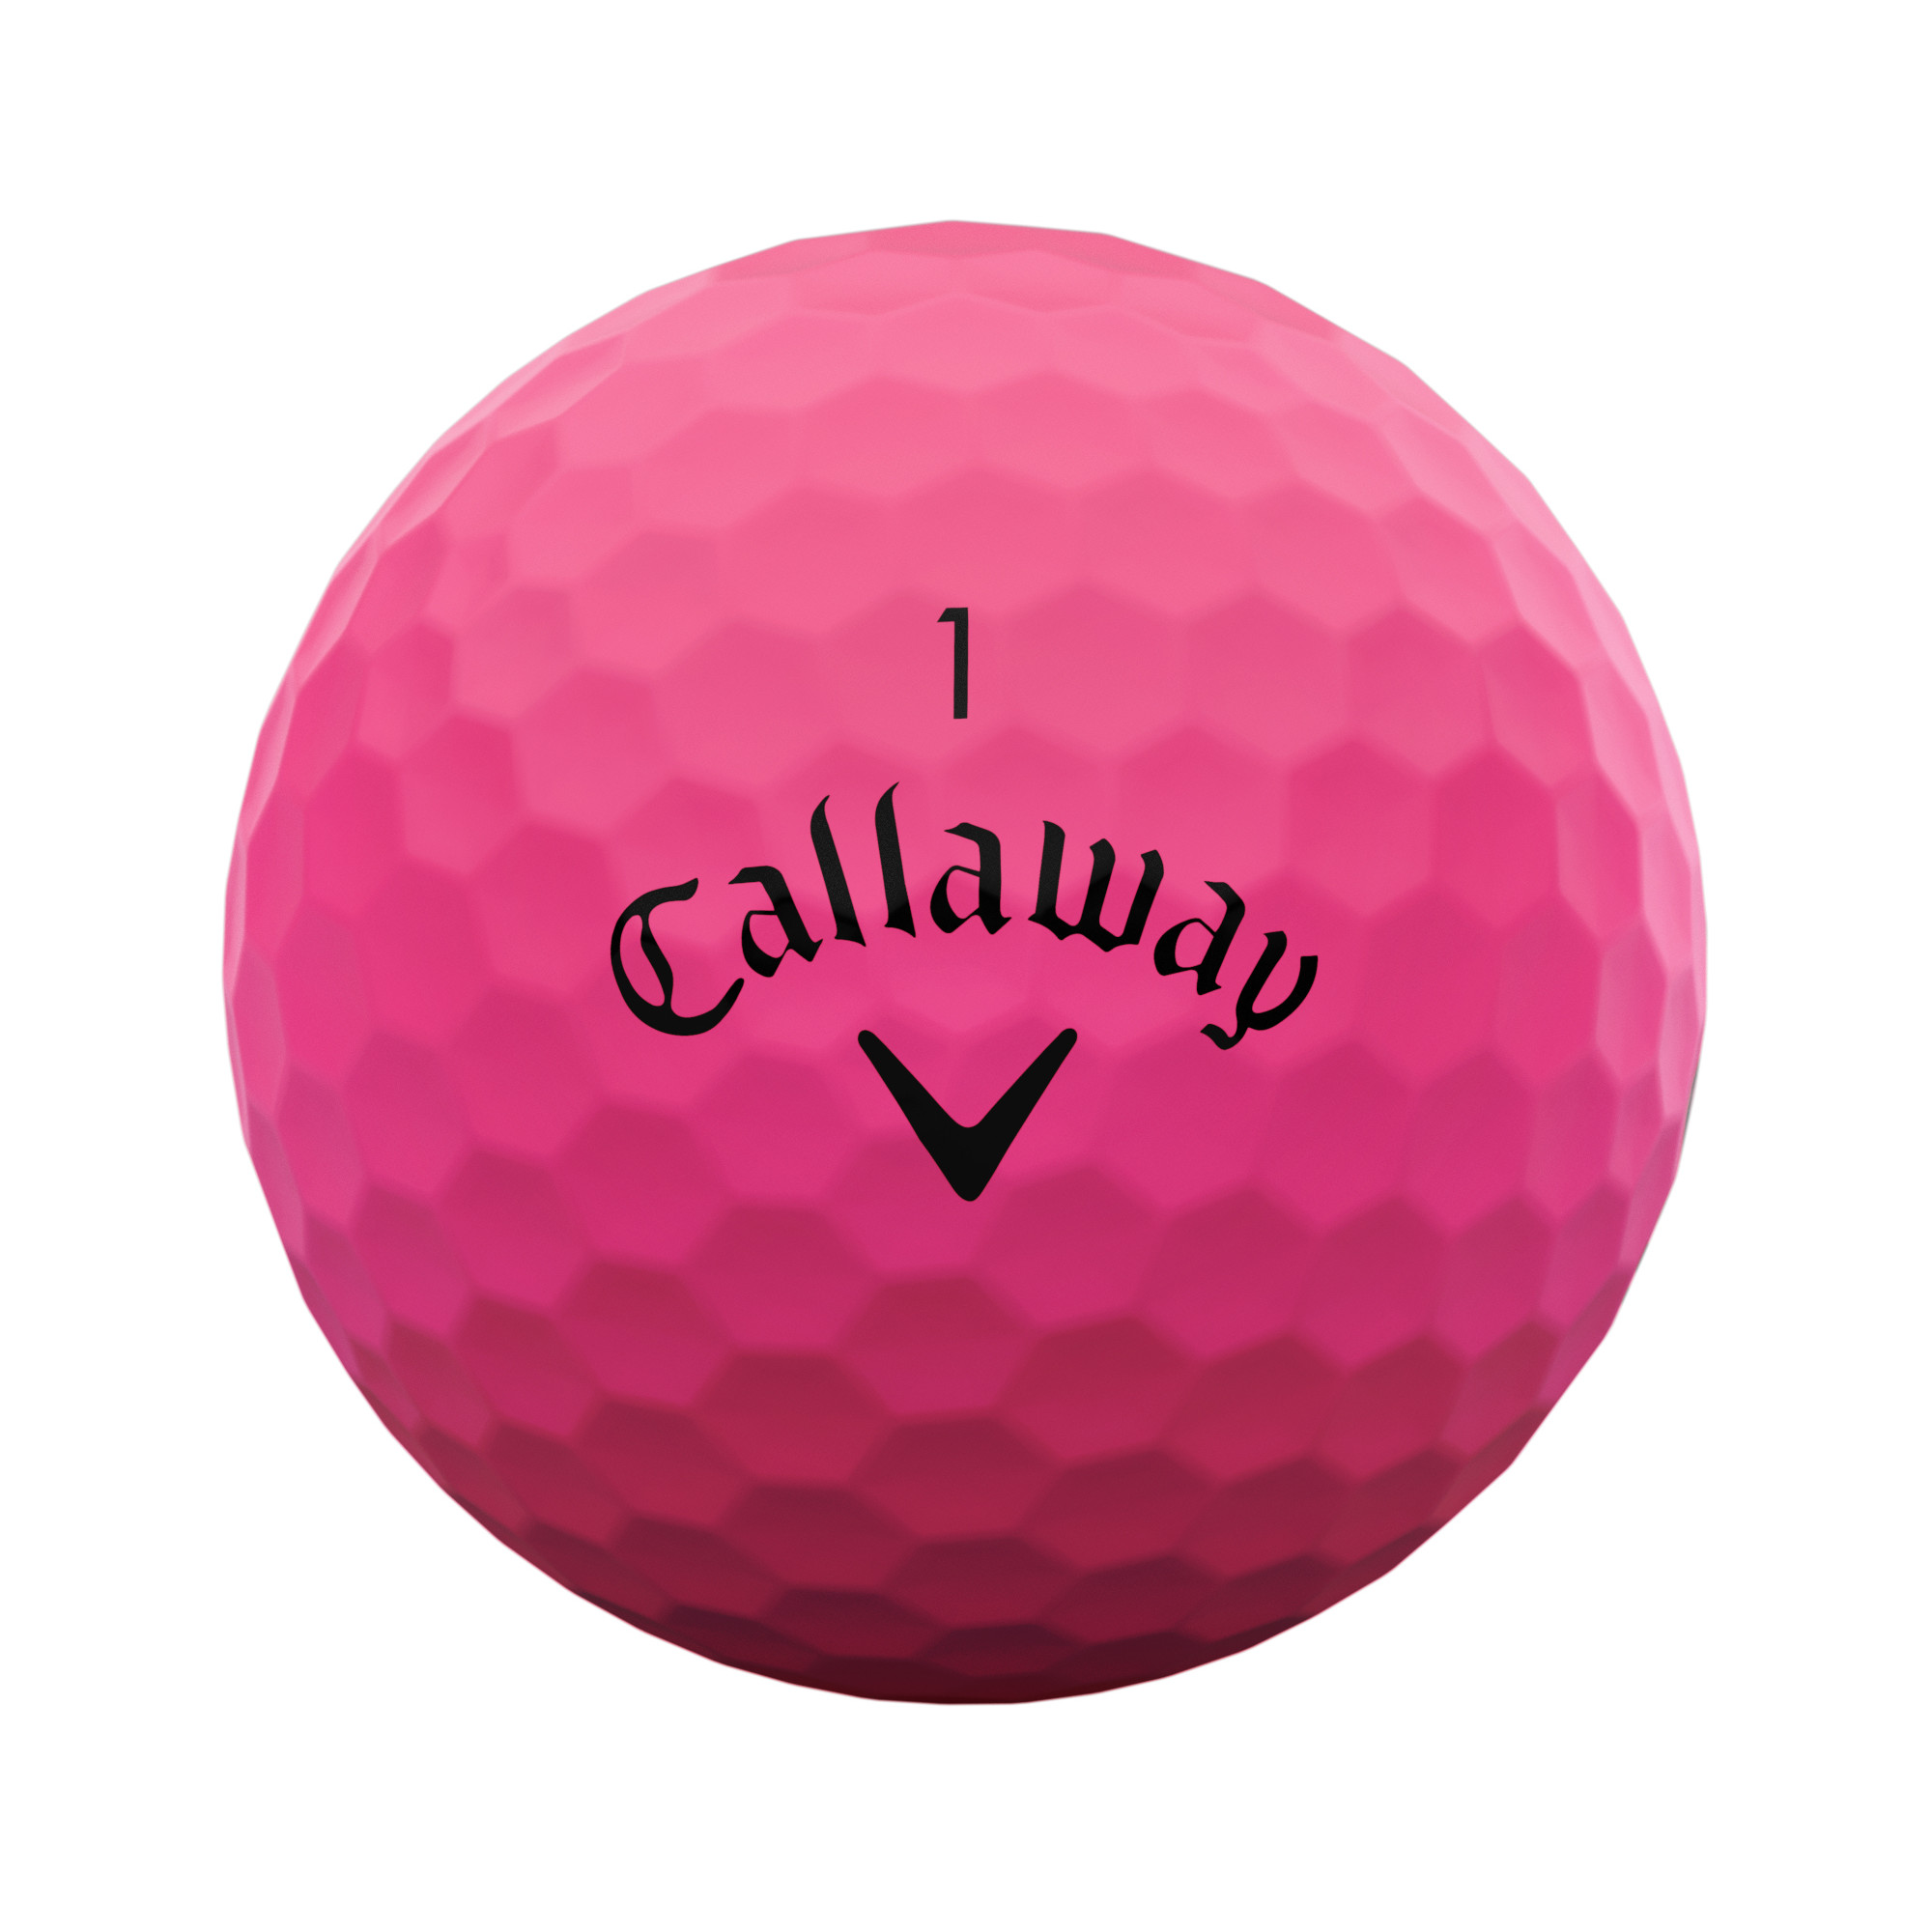 Callaway SuperSoft Golfbälle bedruckt, matt pink (VPE à 12 Bälle)